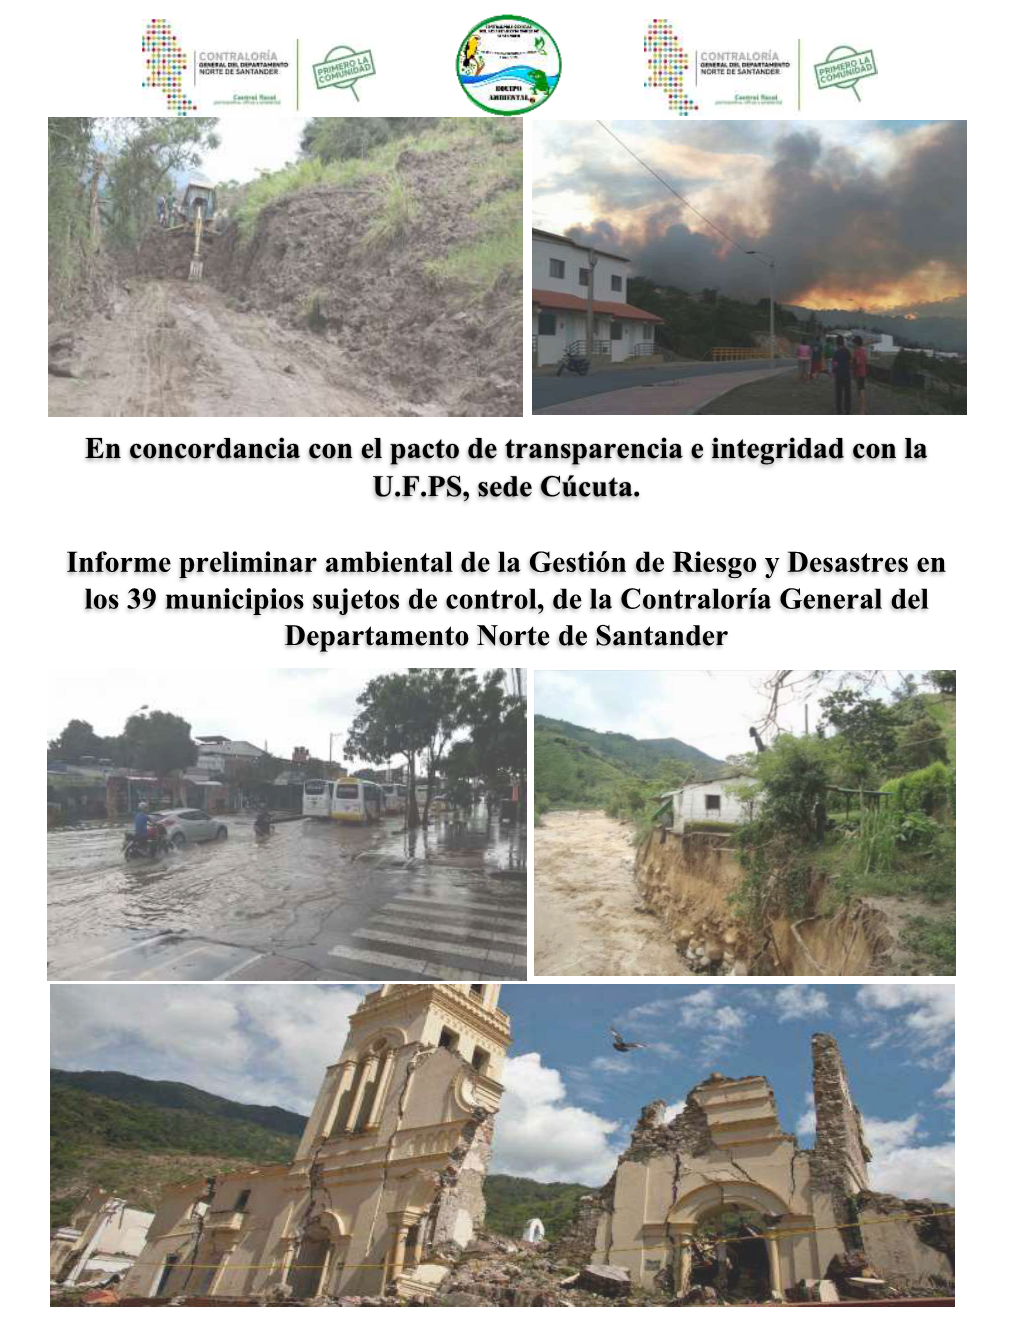 Informe Preliminar Ambiental De La Gestión De Riesgo Y Desastres En